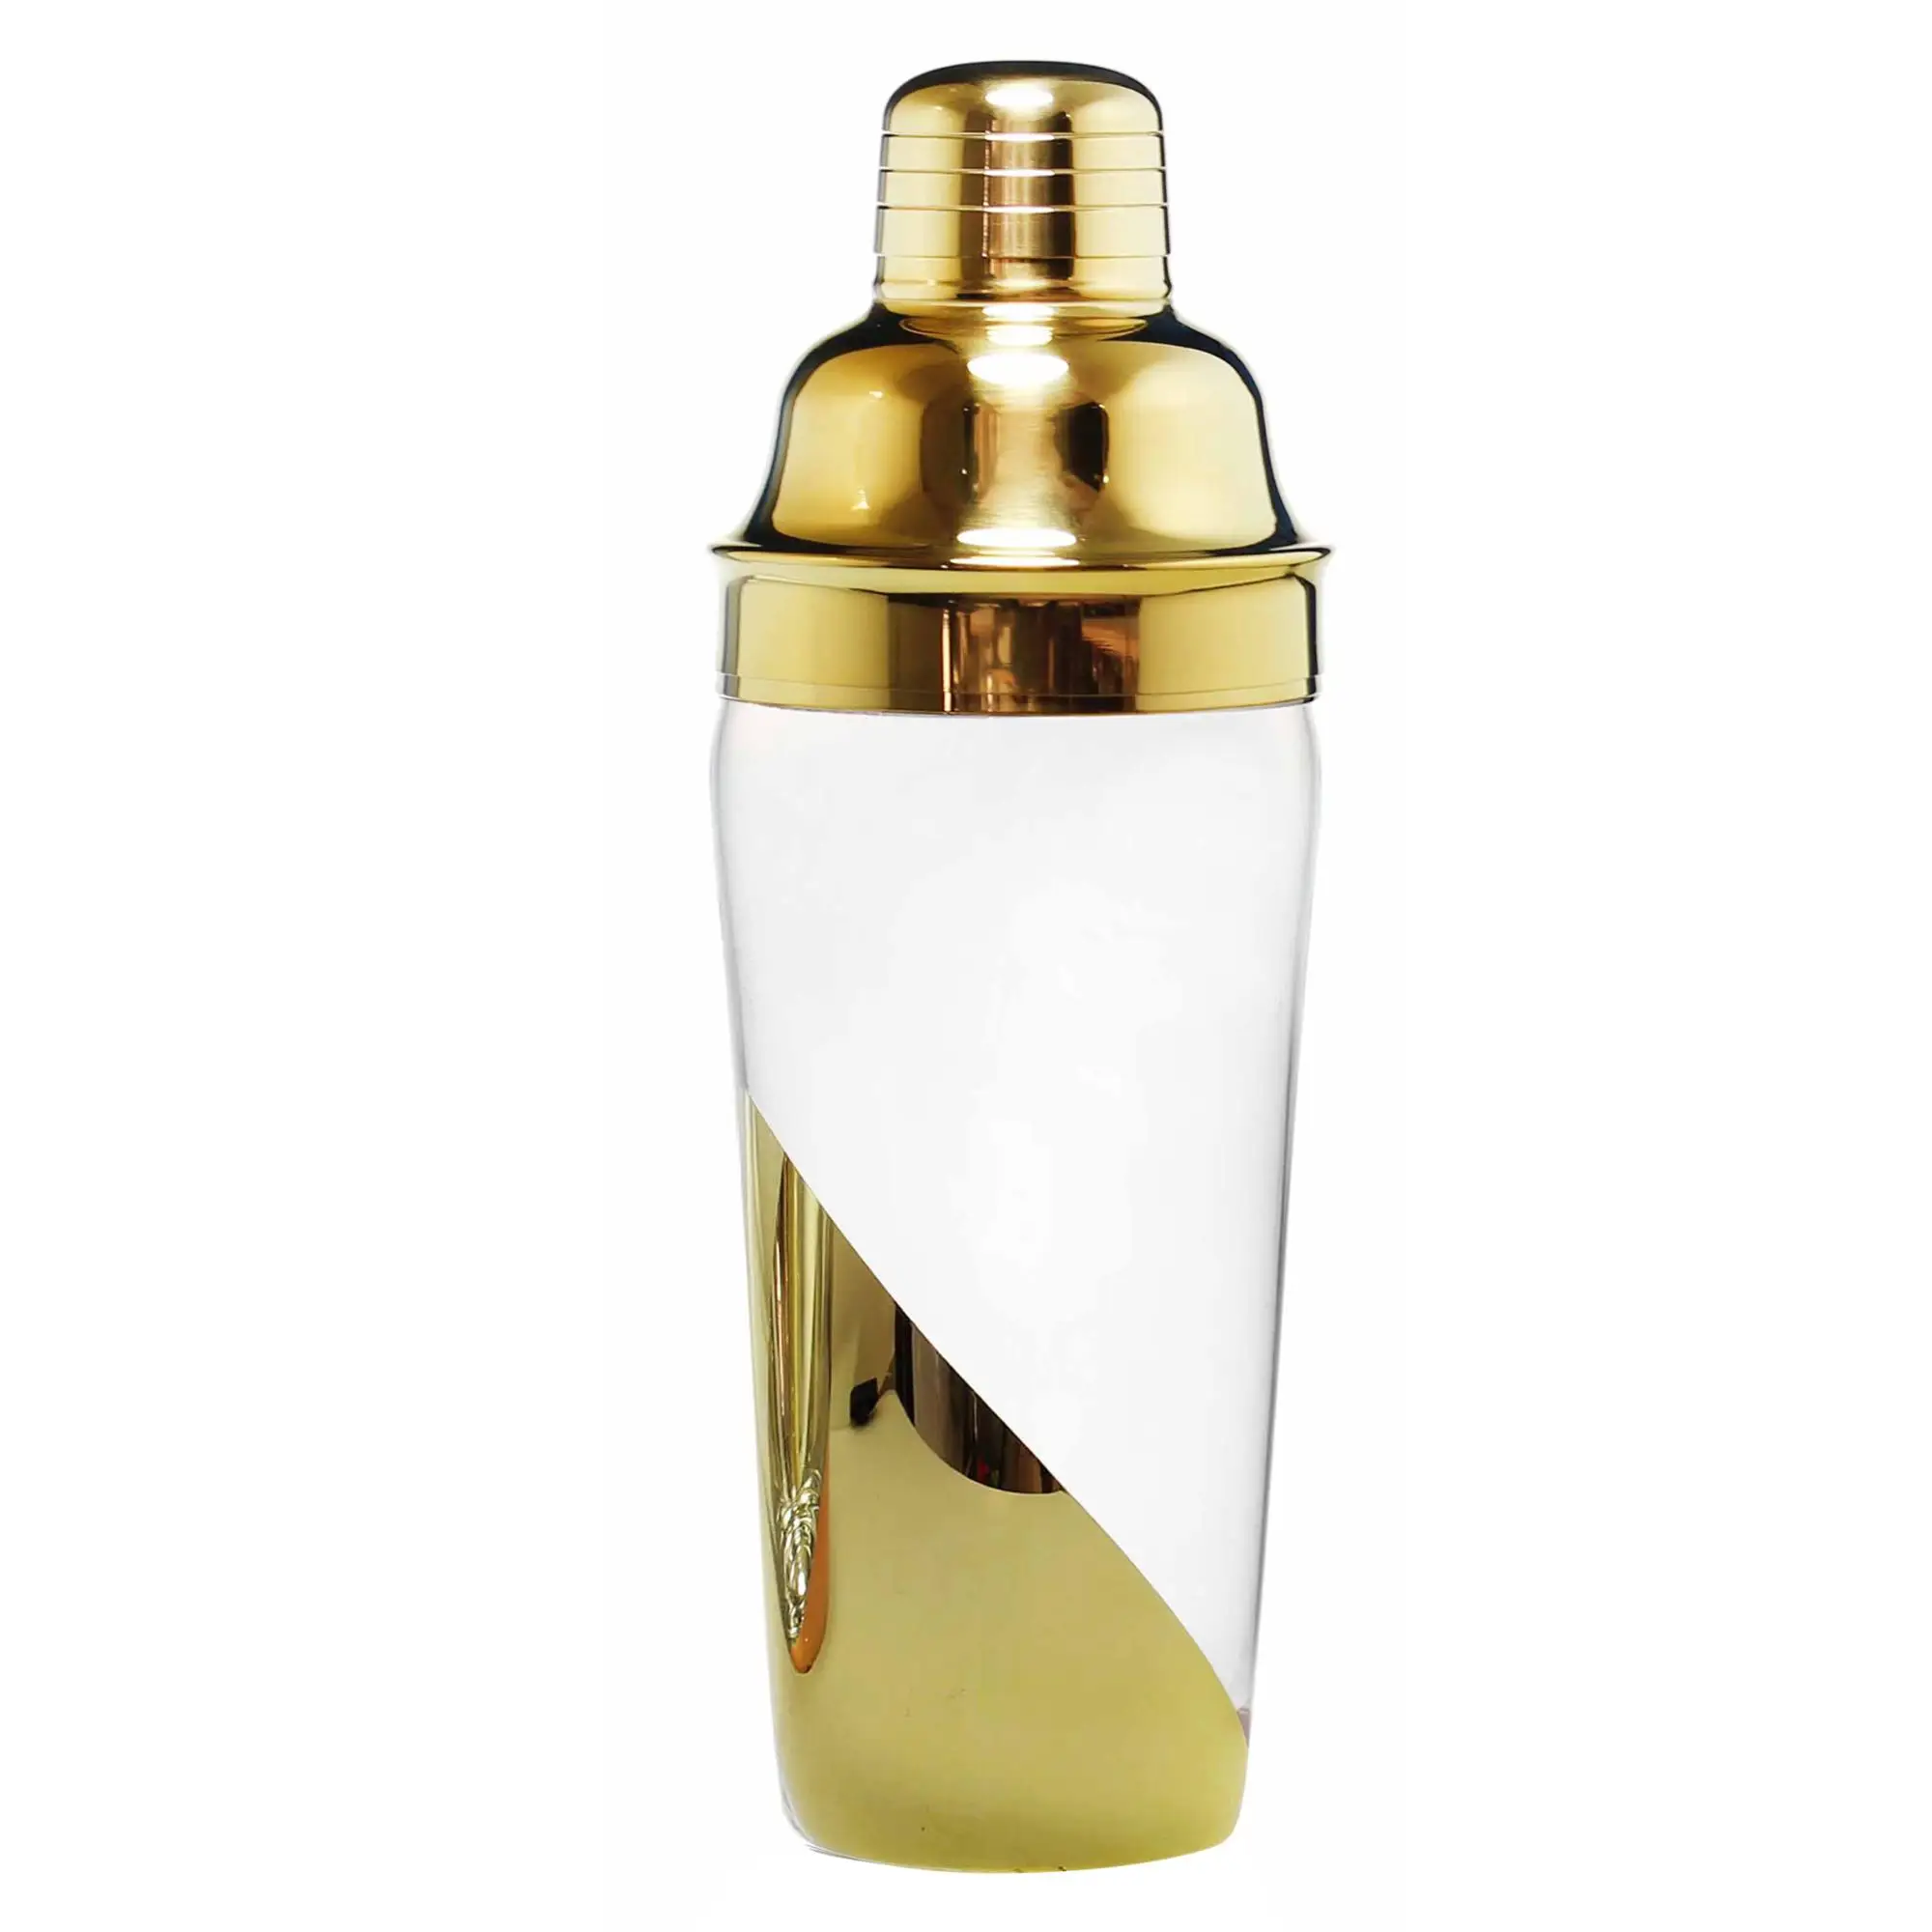 New Design Half Electroplating Gold Cocktail Shaker - Buy Gold Cocktail ...